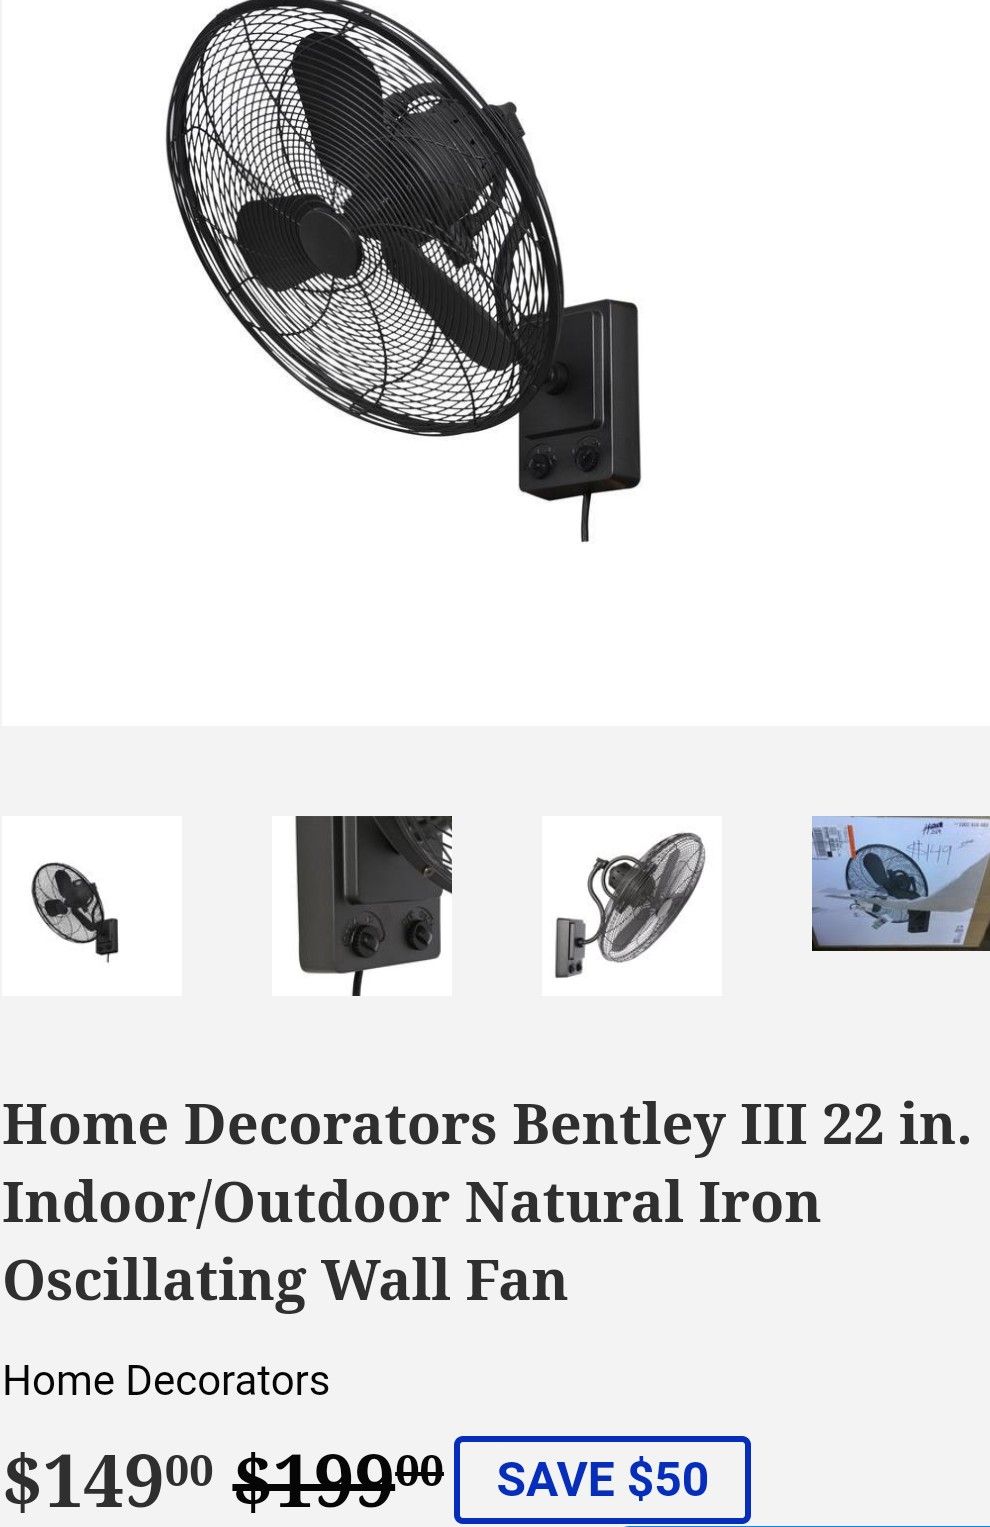 Home Decorators Bentley III 22 in. Indoor/Outdoor Natural Iron Oscillating Wall Fan